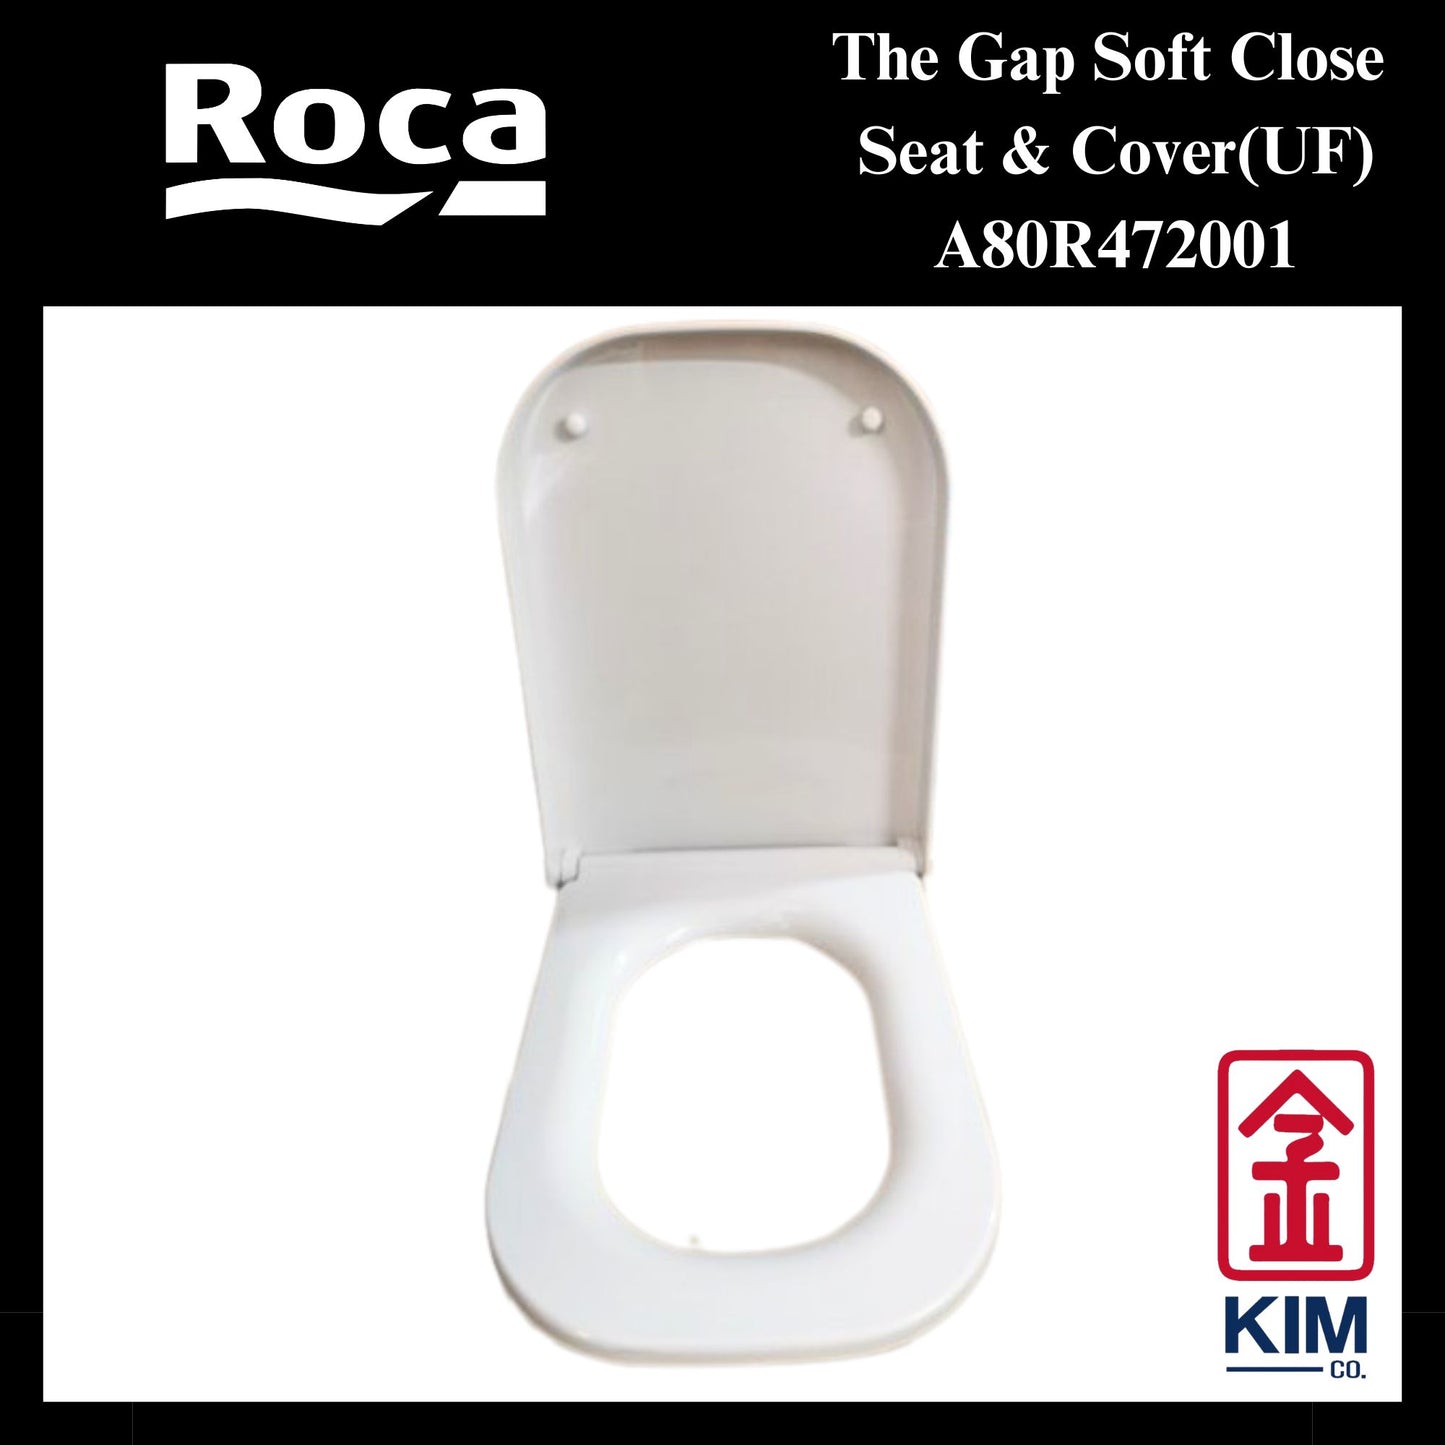 Roca The Gap Soft Close Seat & Cover (UF)(A80R472001)